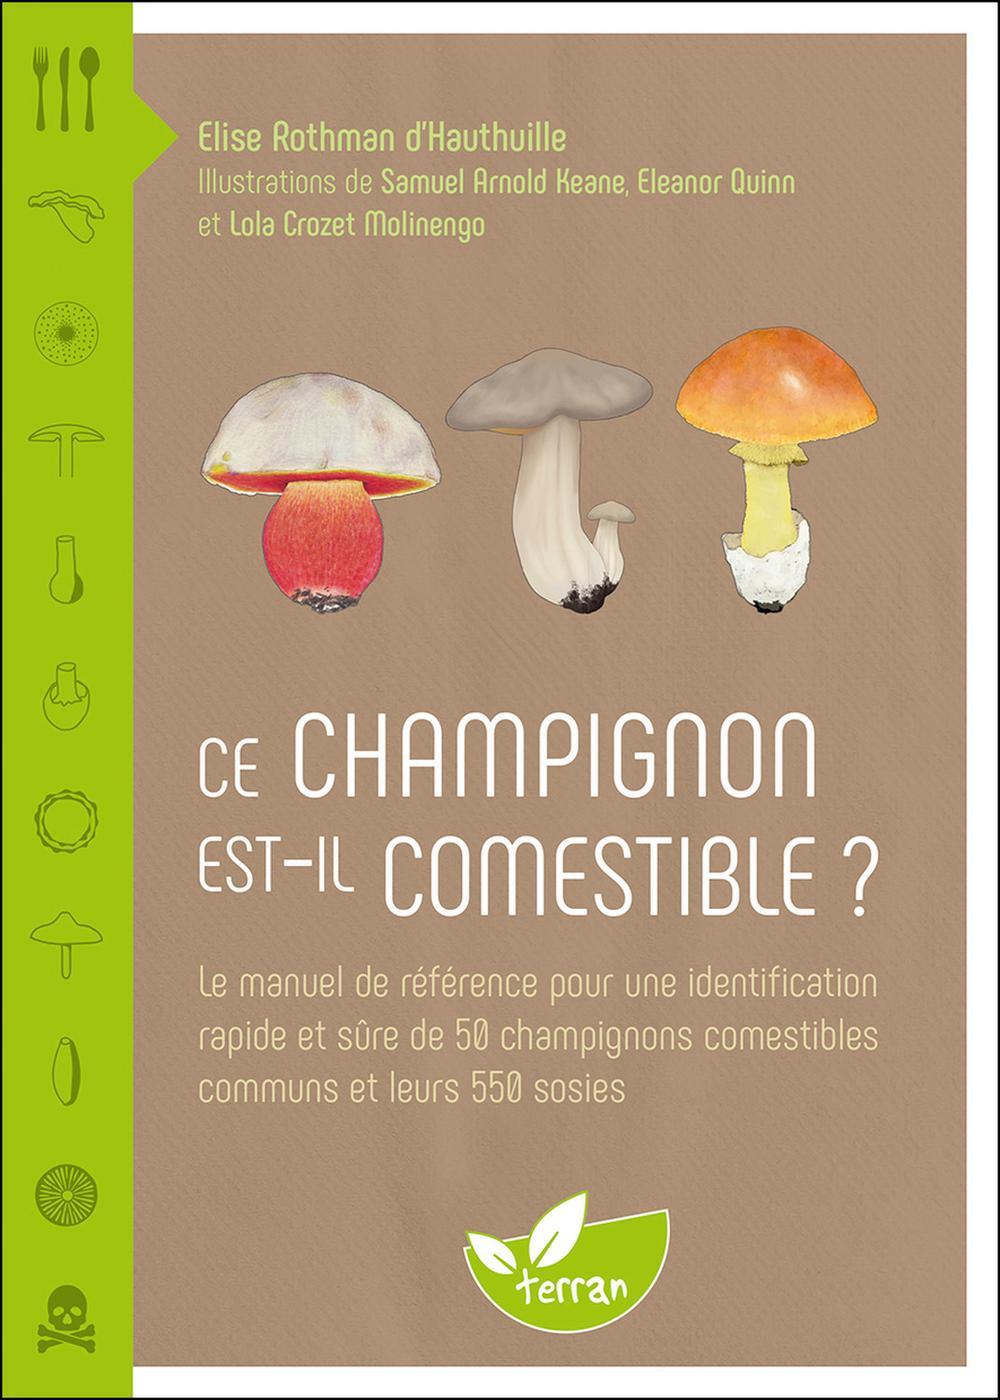 Ce champignon est-il comestible ? - Le manuel de référence pour une  identification rapide et sûre de 50 champignons comestibles - Elise Rothman